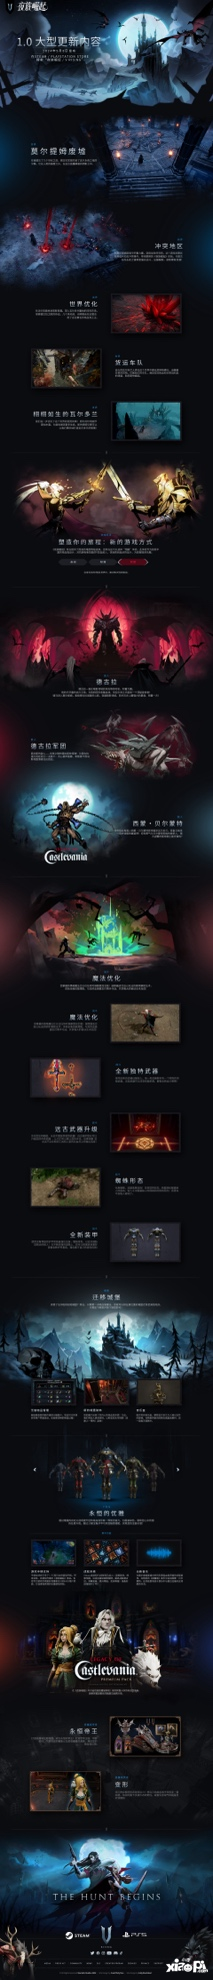 吸血鬼主题生存游戏《夜族崛起》发布全新区域首个实机预告片：“莫尔提姆废墟”